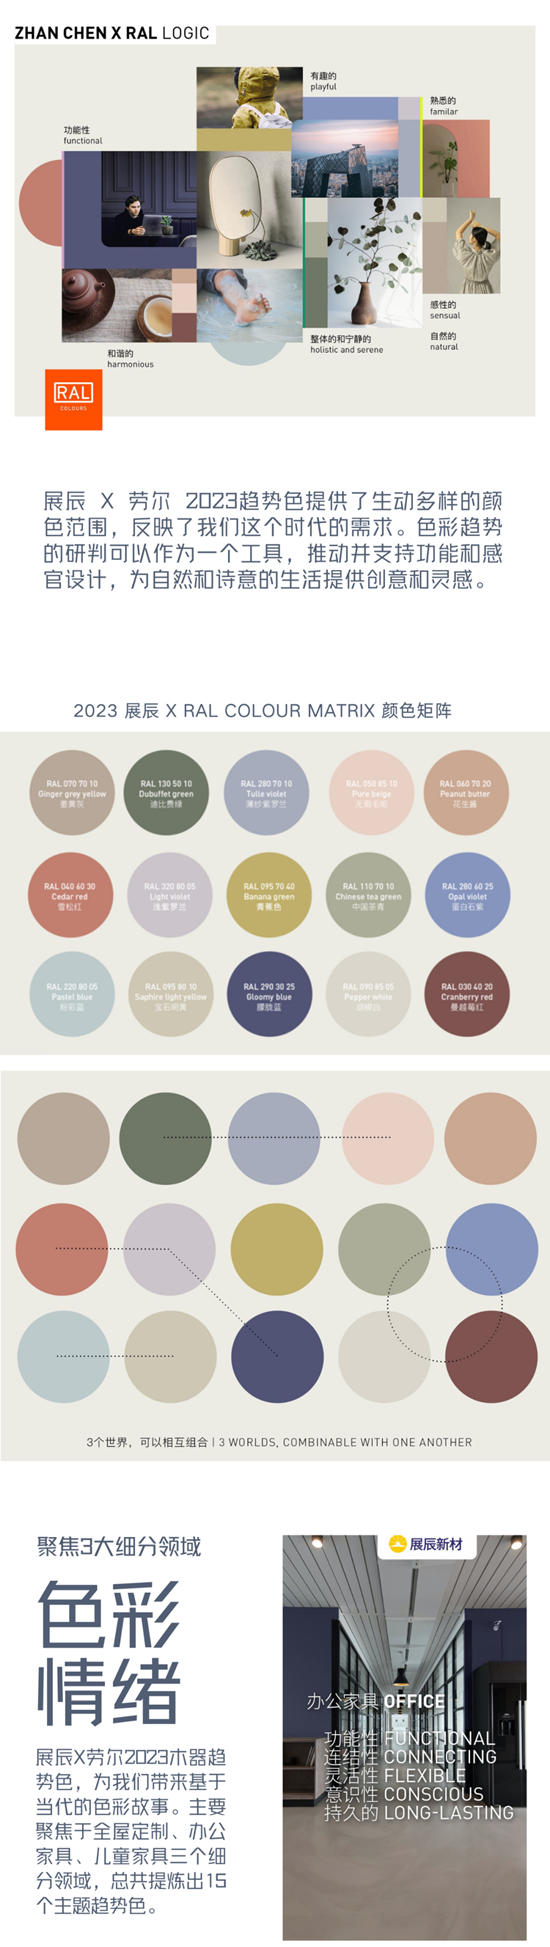 融合色彩文化，创造色彩价值！2023展辰x劳尔木器色彩趋势发布